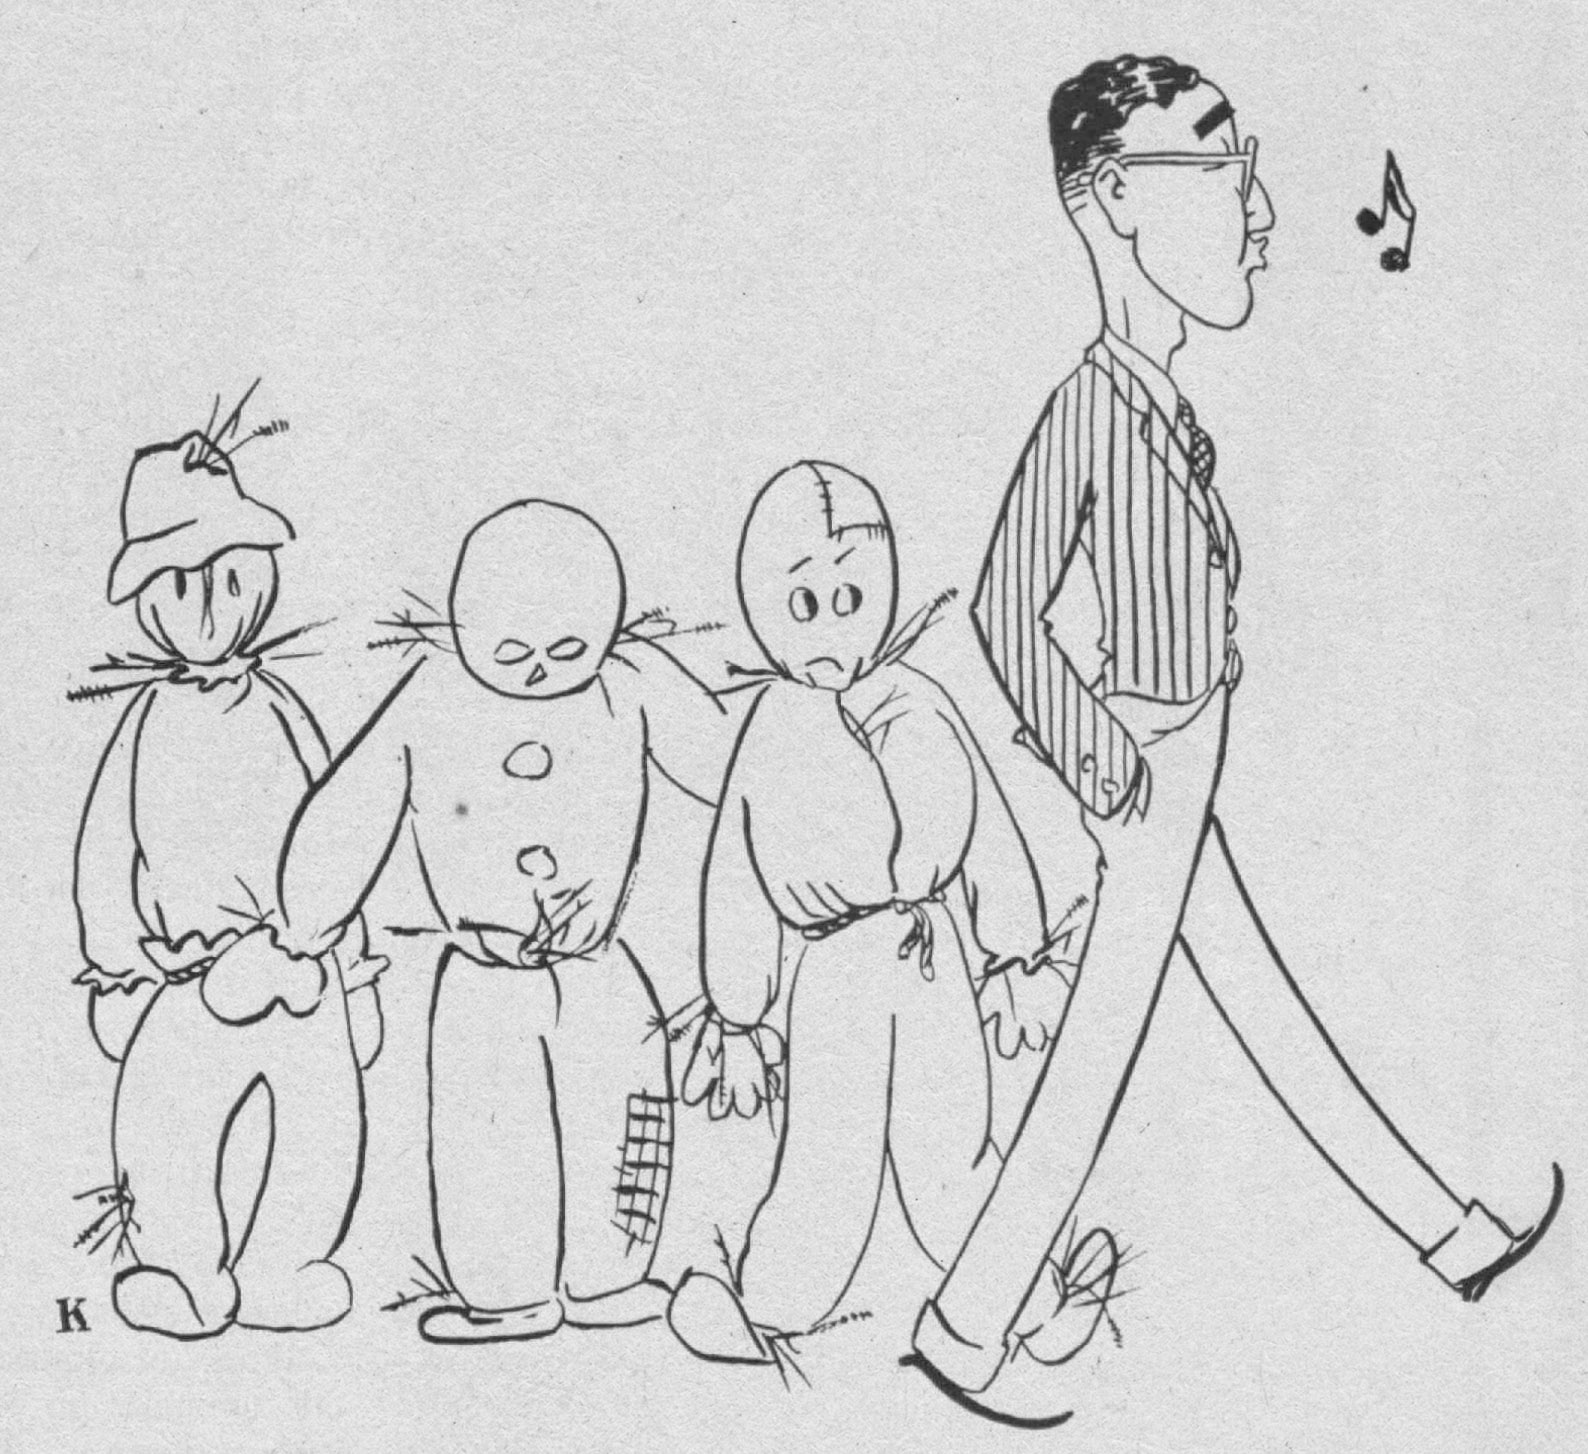 Caricature de 1962 représentant Robert Solow passant devant trois épouvantails et sifflant nonchalamment